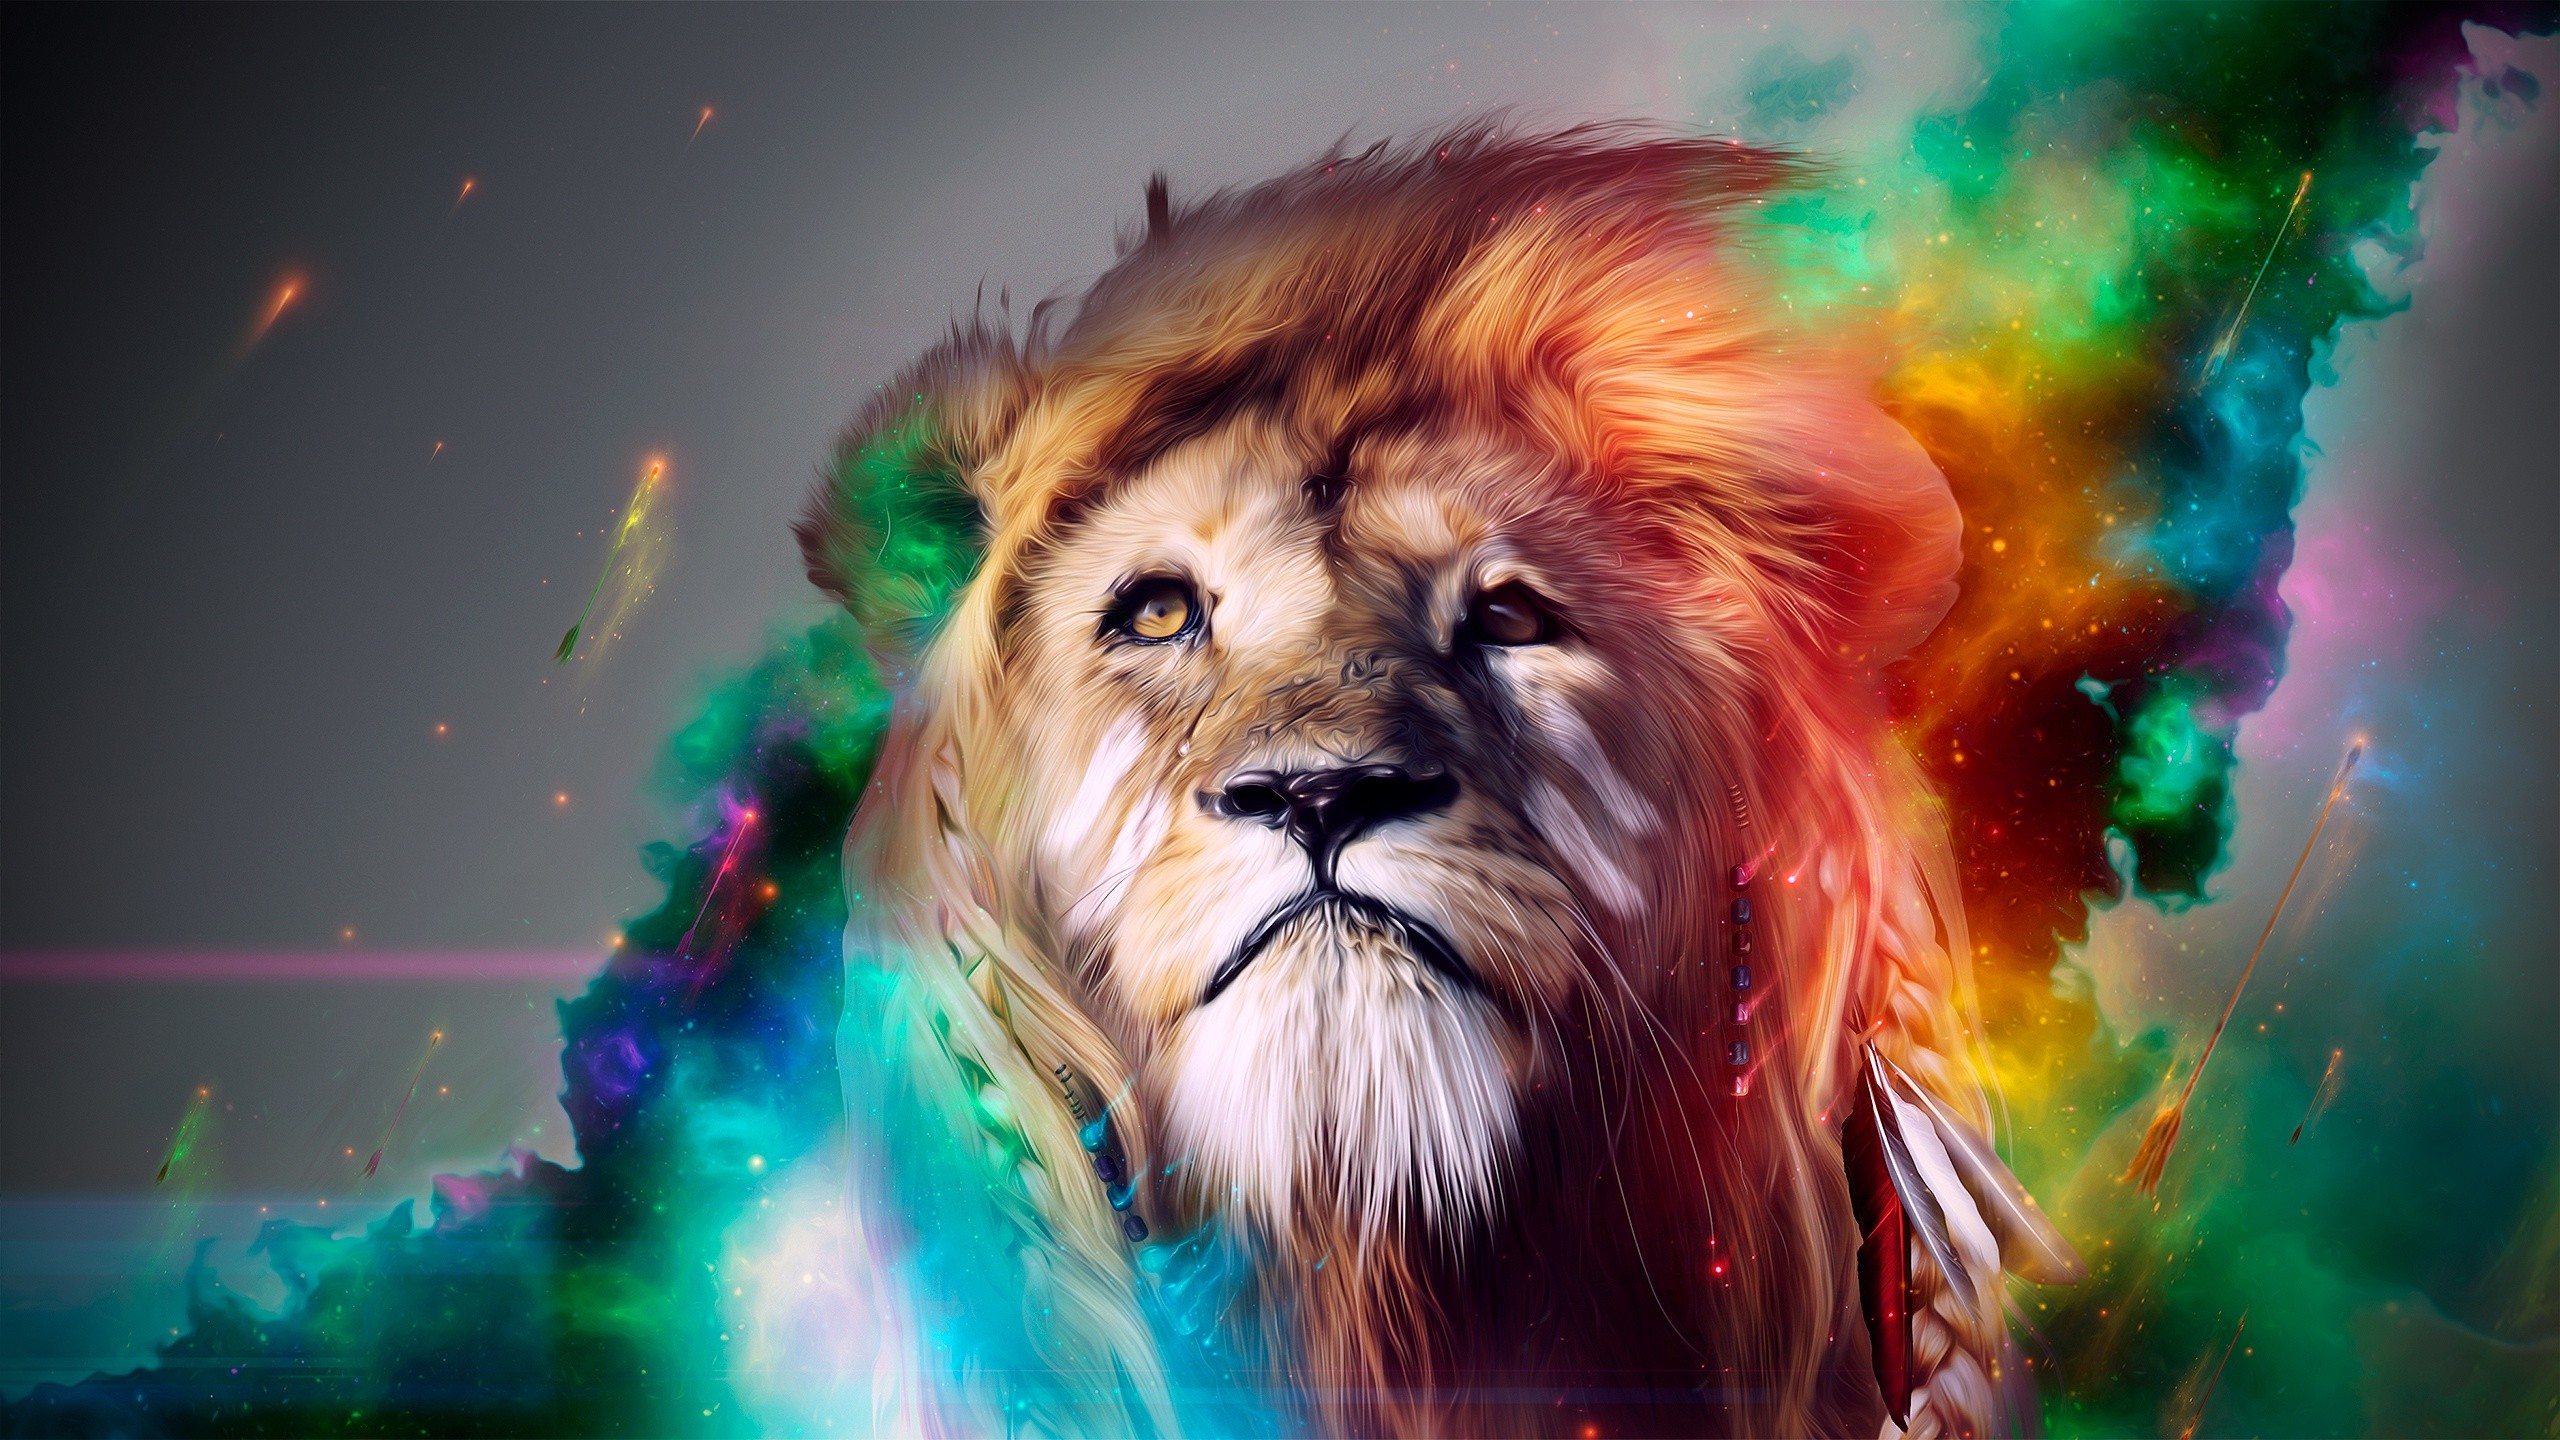 Artistic Lion Colorful 2560x1440